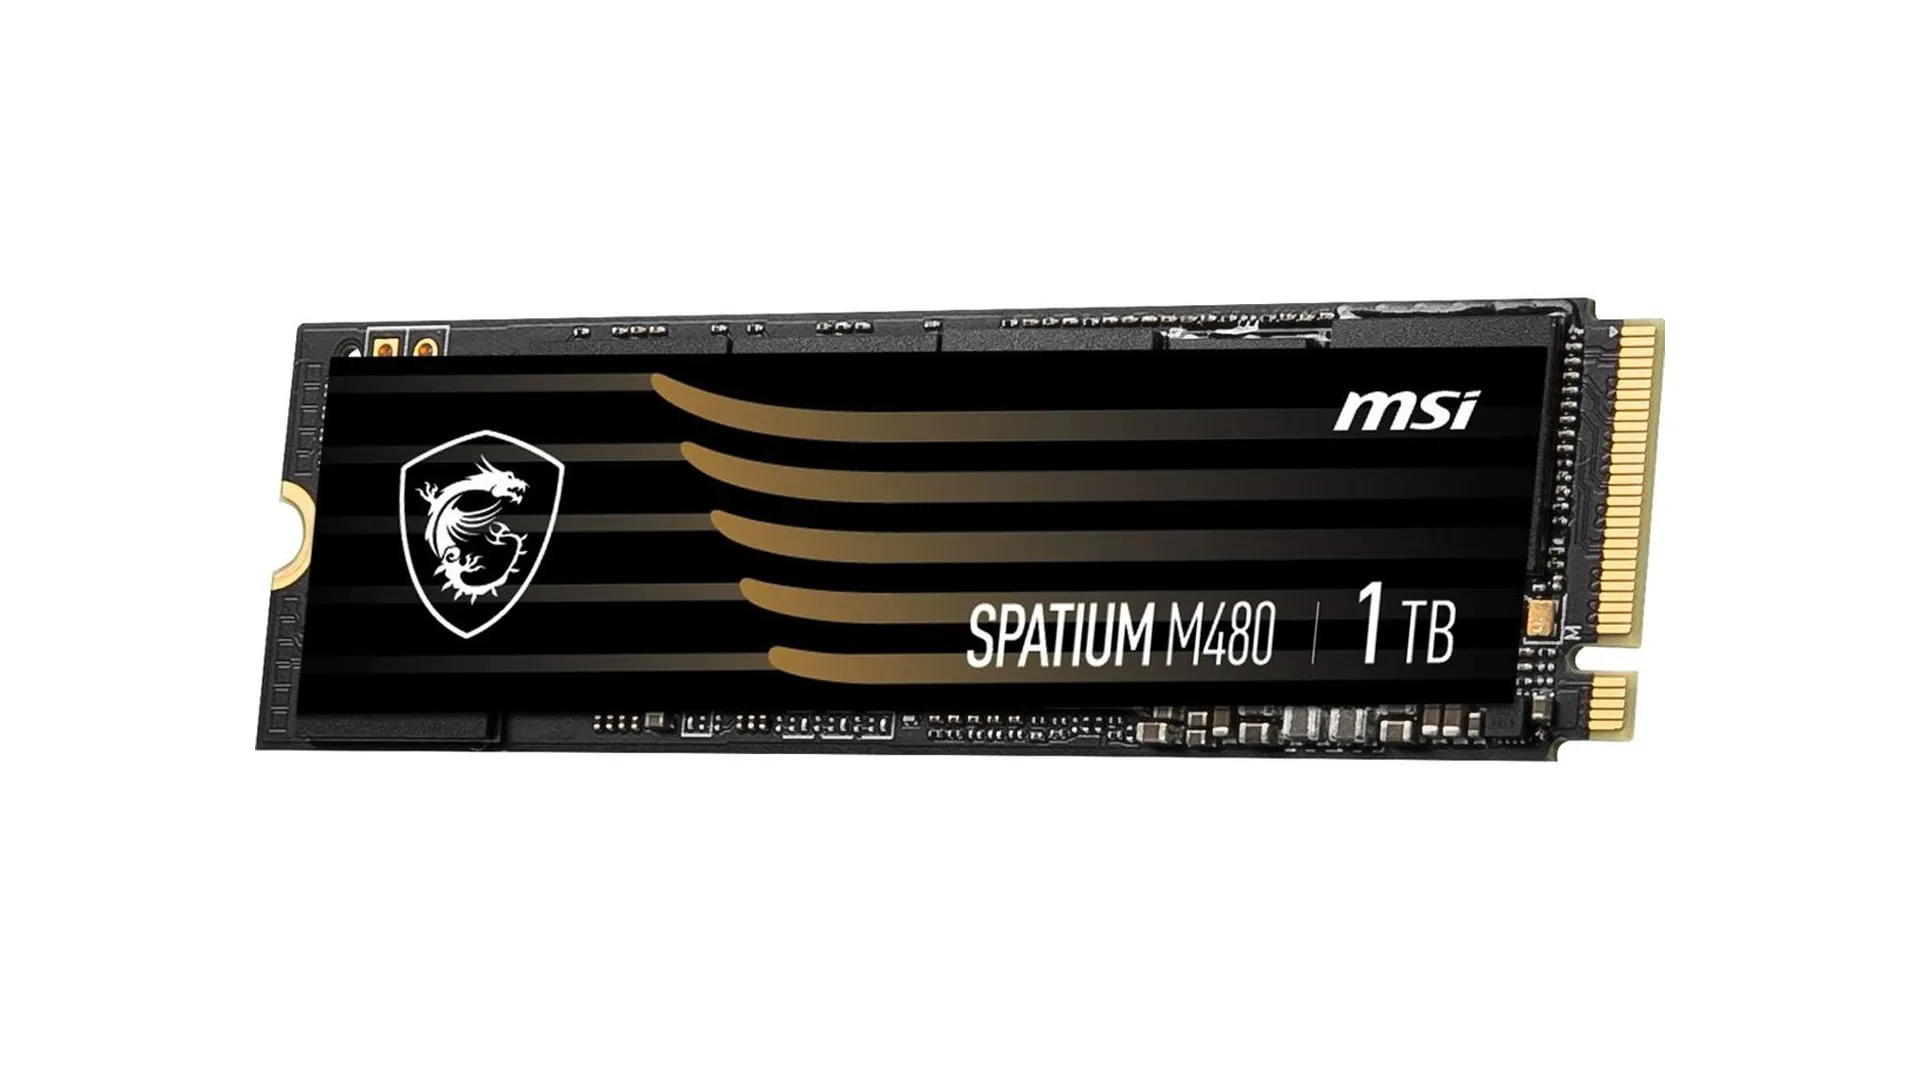 MSI Spatium M480 1TB